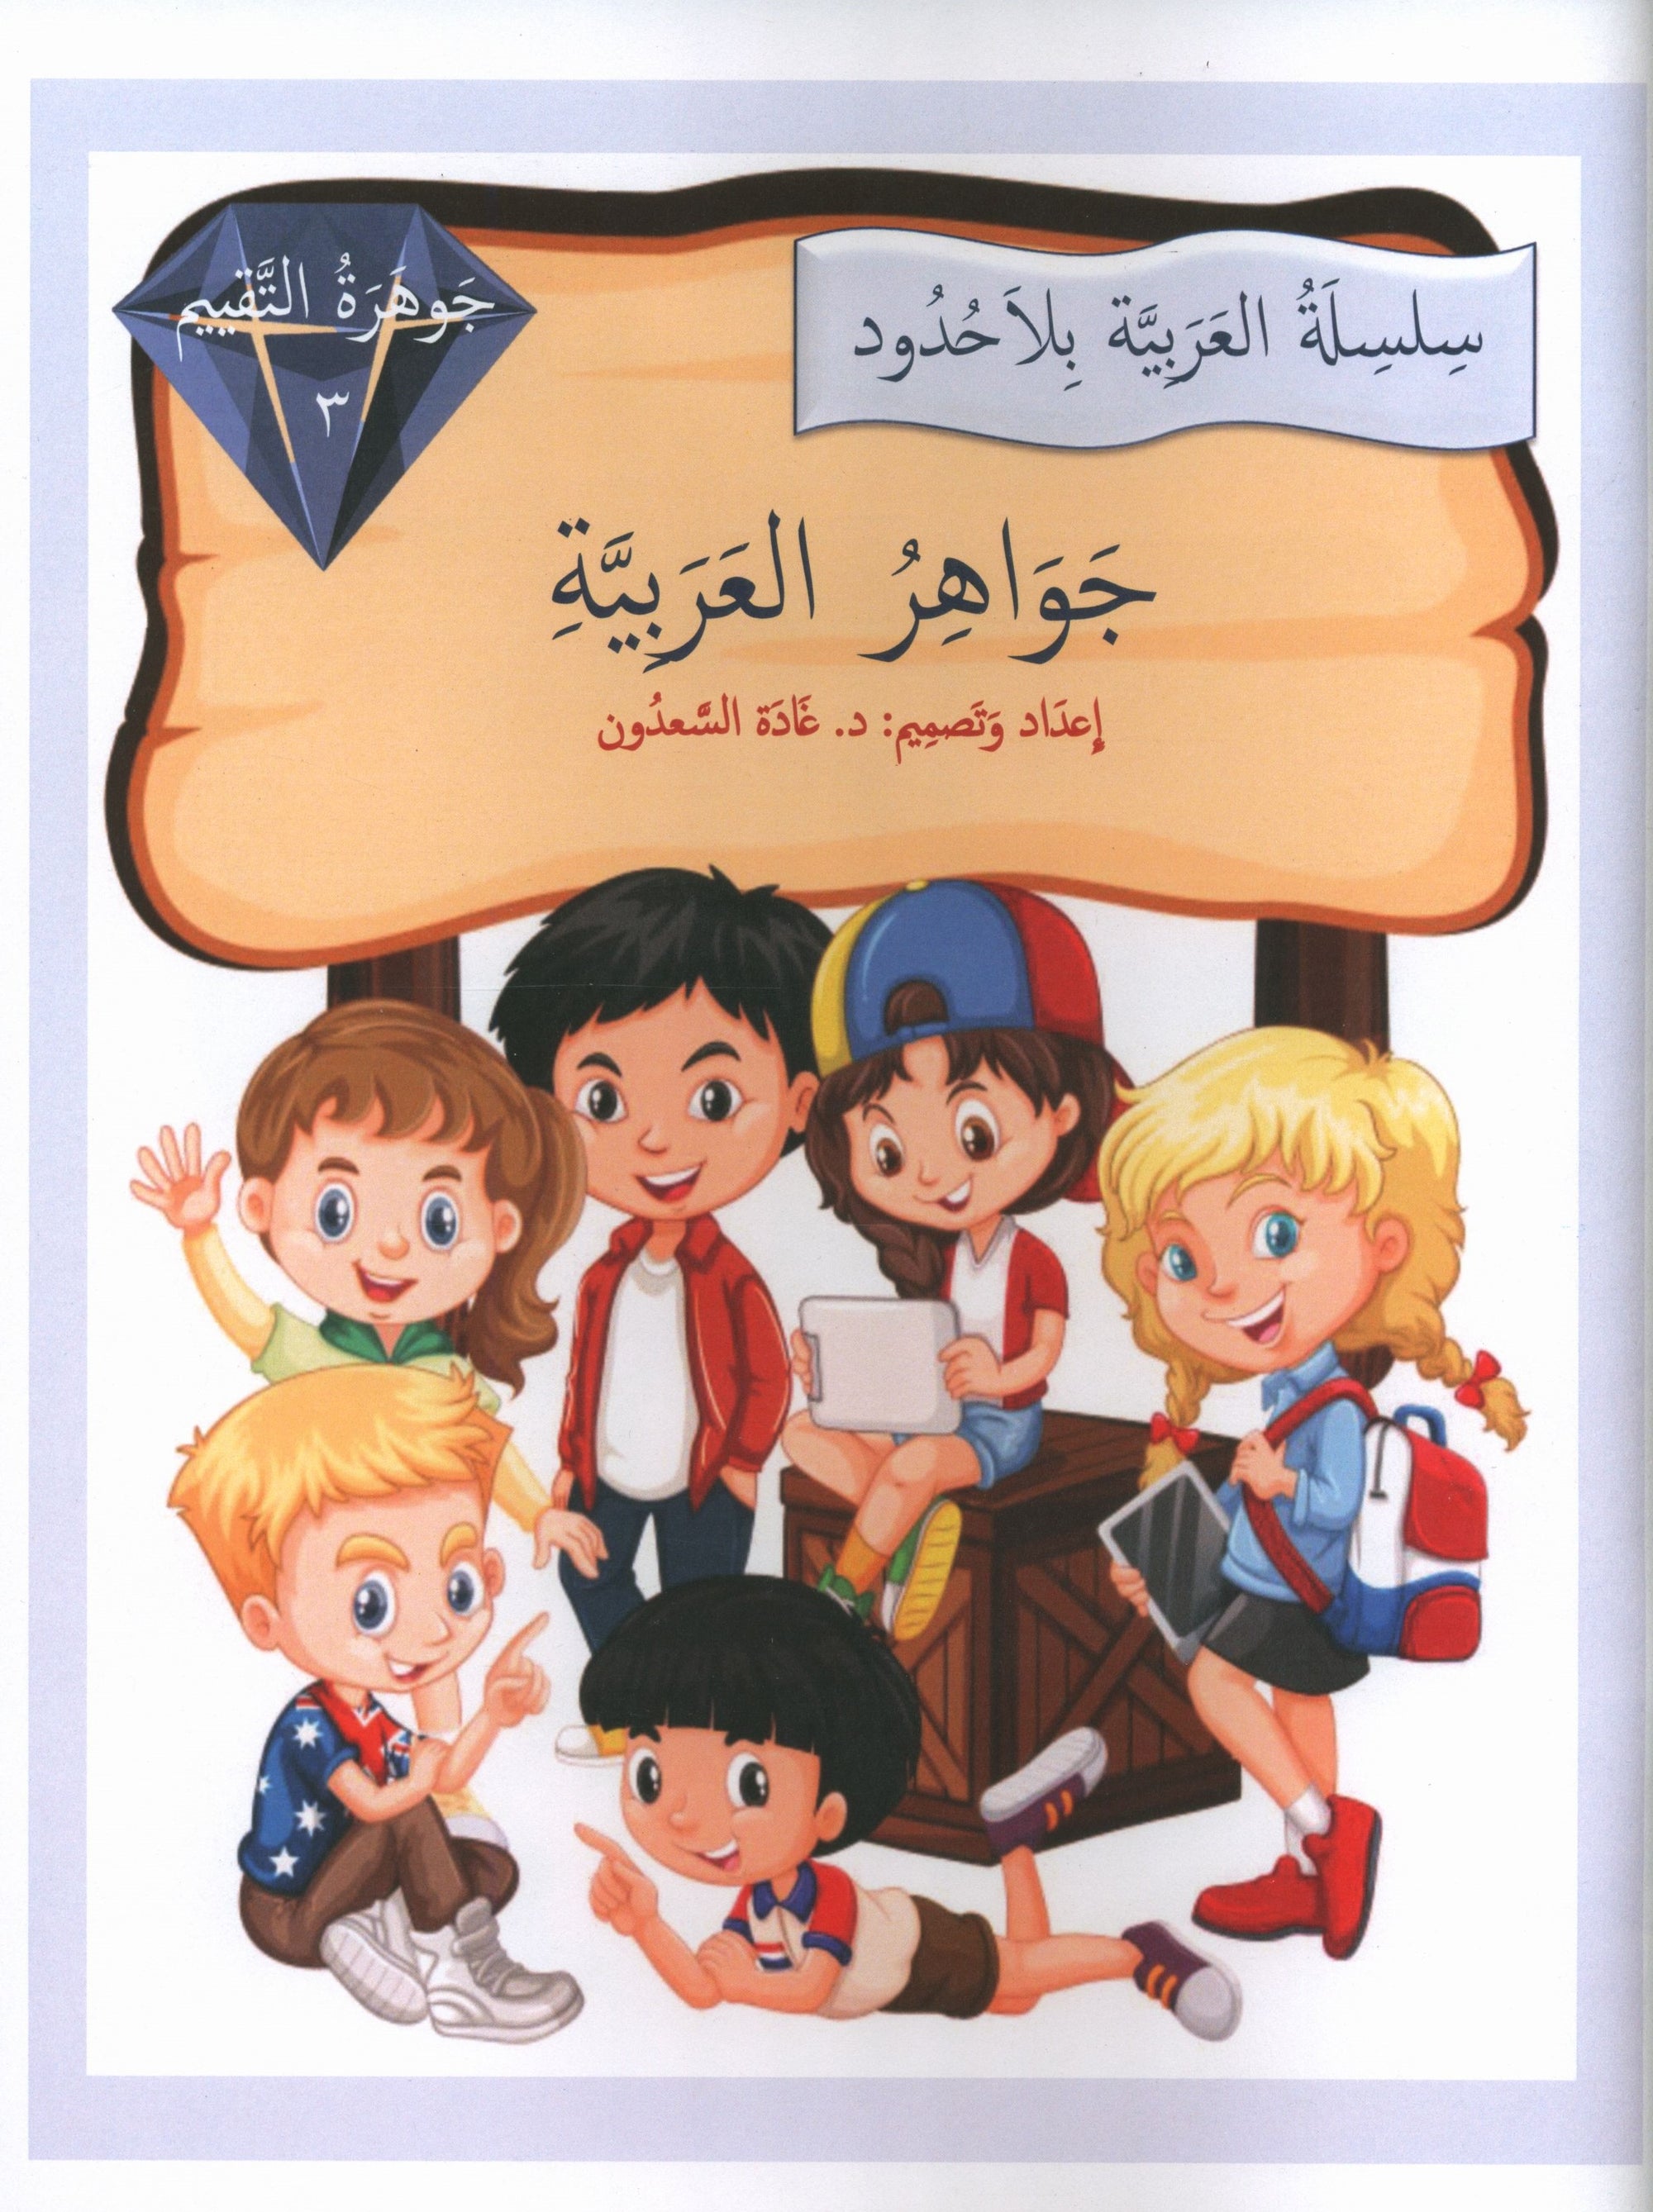 Gems of Arabic Assessment Level 3